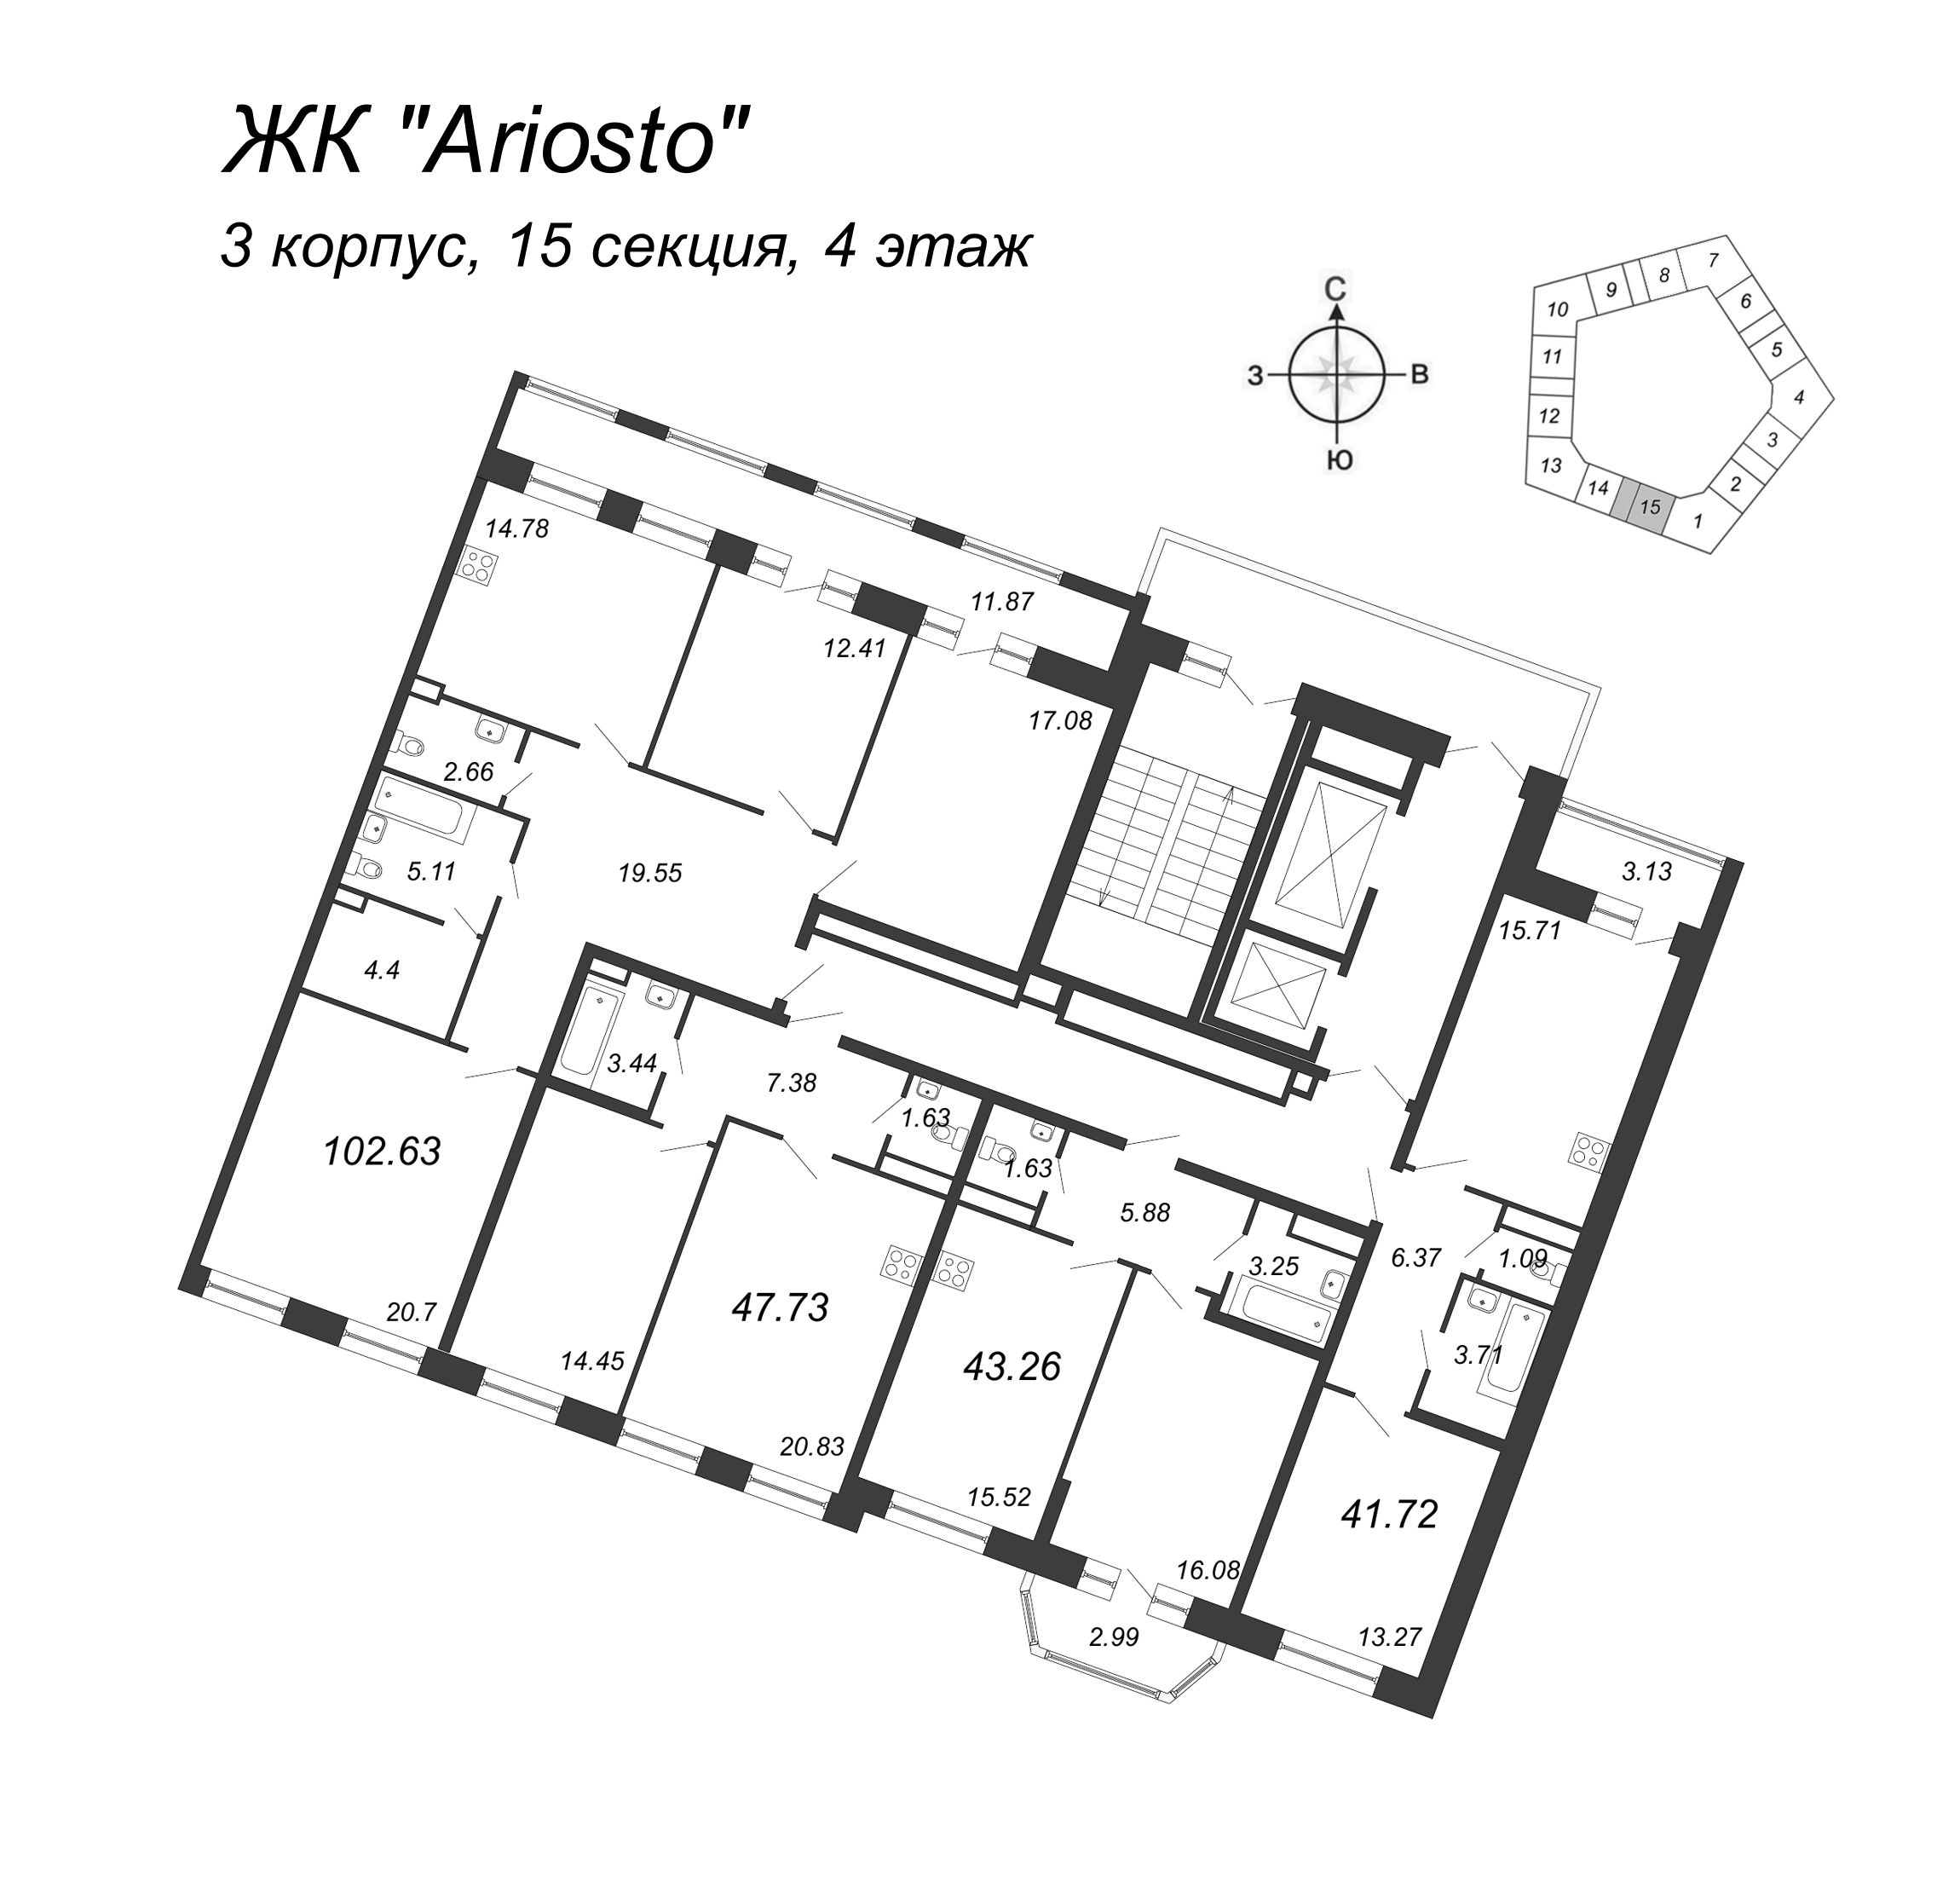 2-комнатная (Евро) квартира, 47.73 м² в ЖК "Ariosto" - планировка этажа